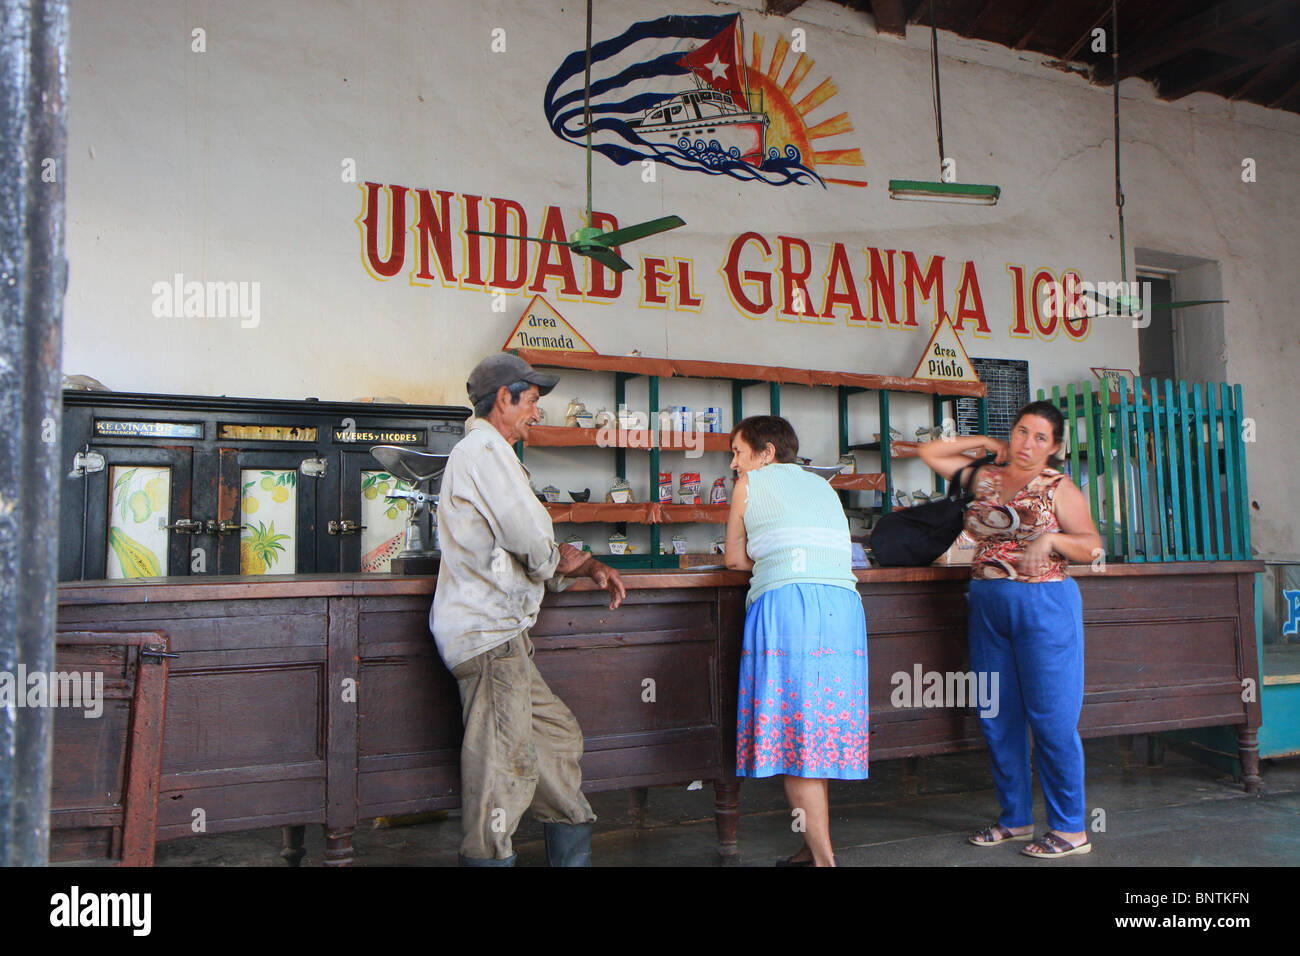 Unidad el granma store, Cuba Stock Photo